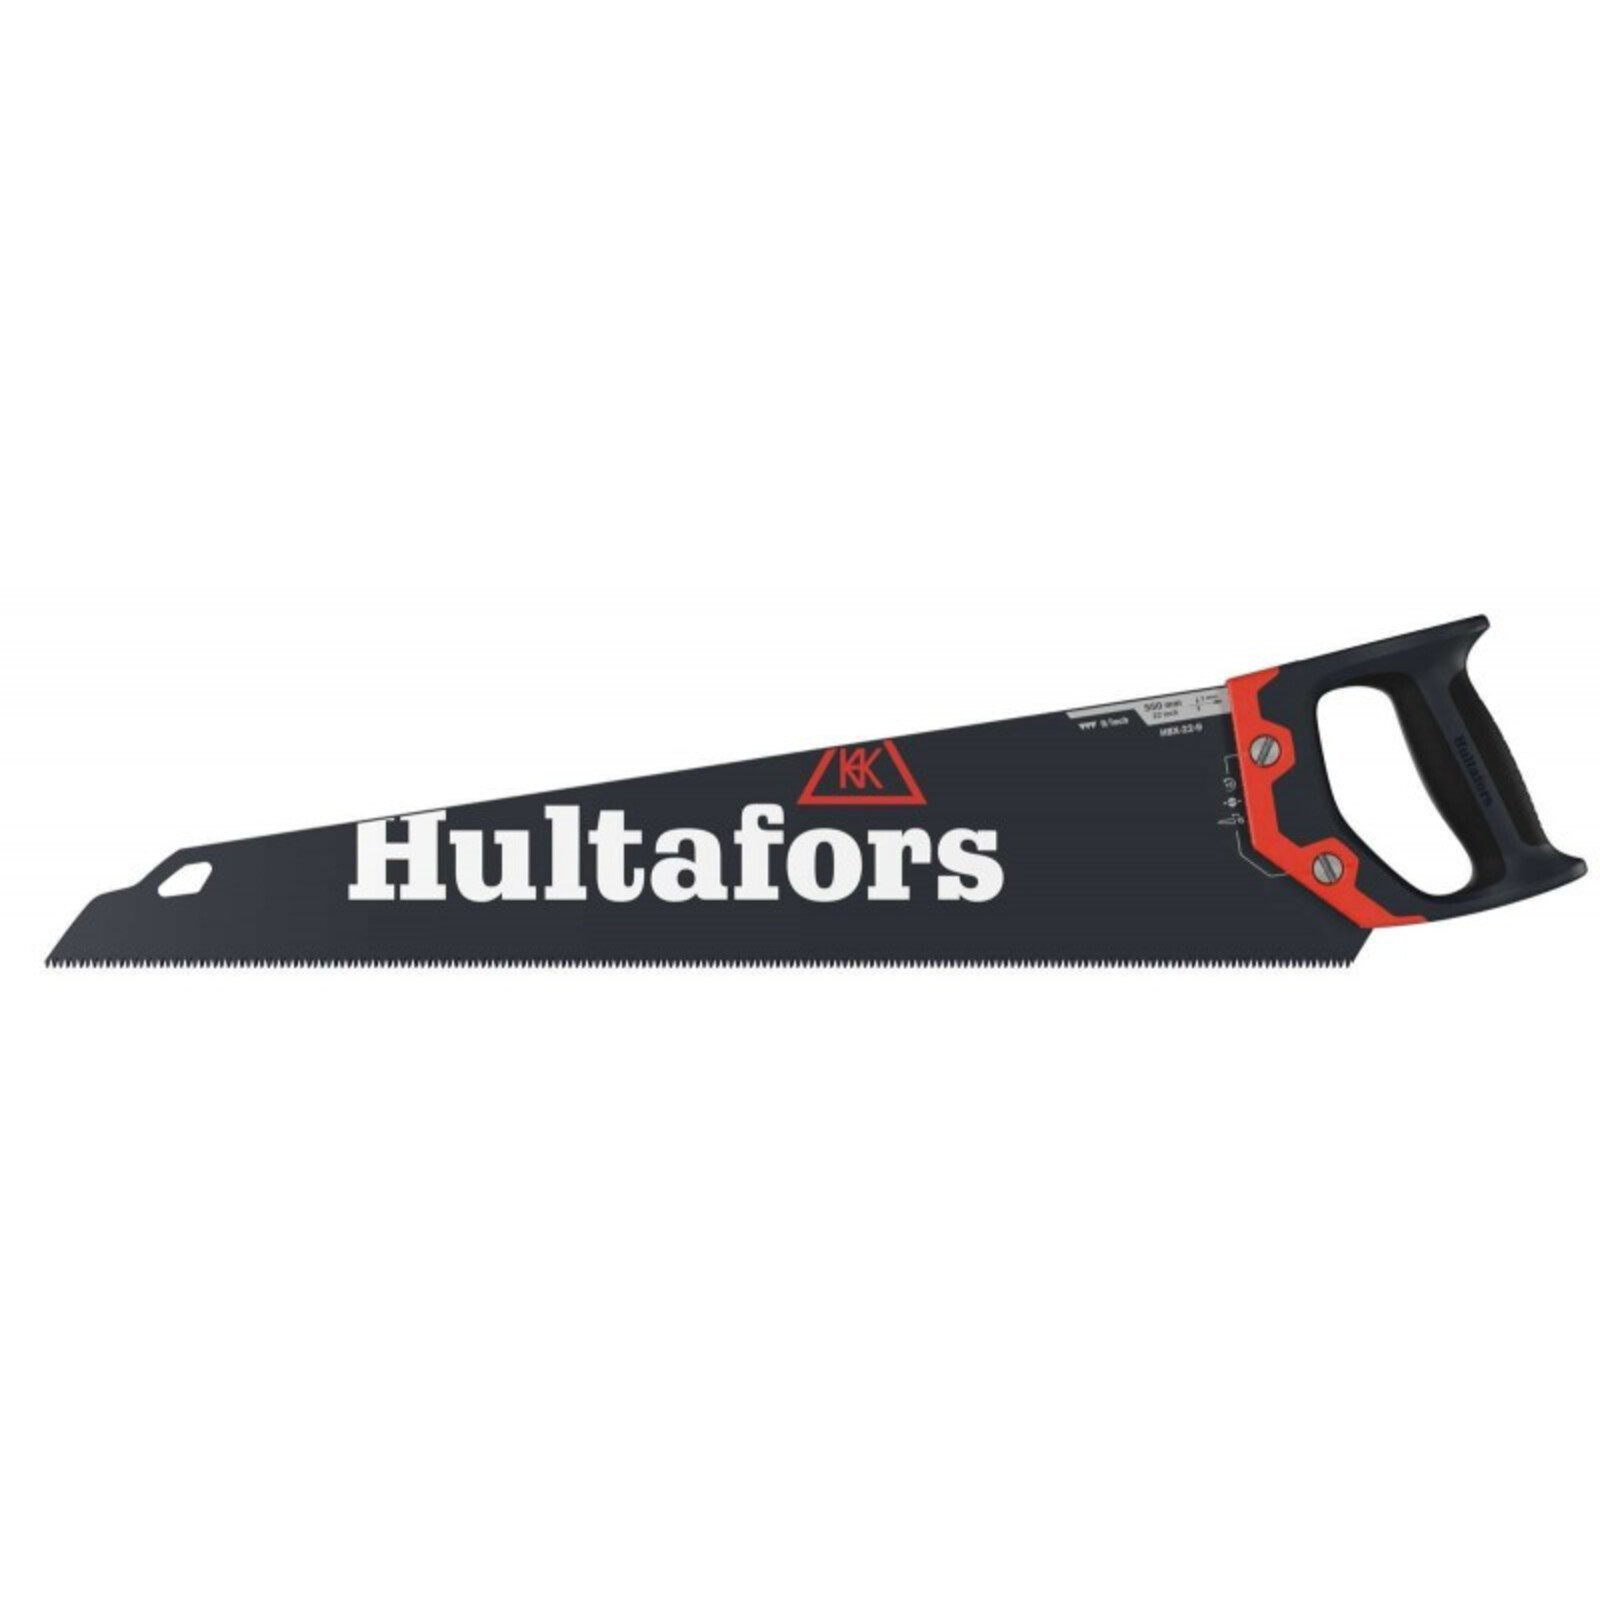 Ručná píla Hultafors HBX - veľkosť: 22-9, farba: čierna/červená